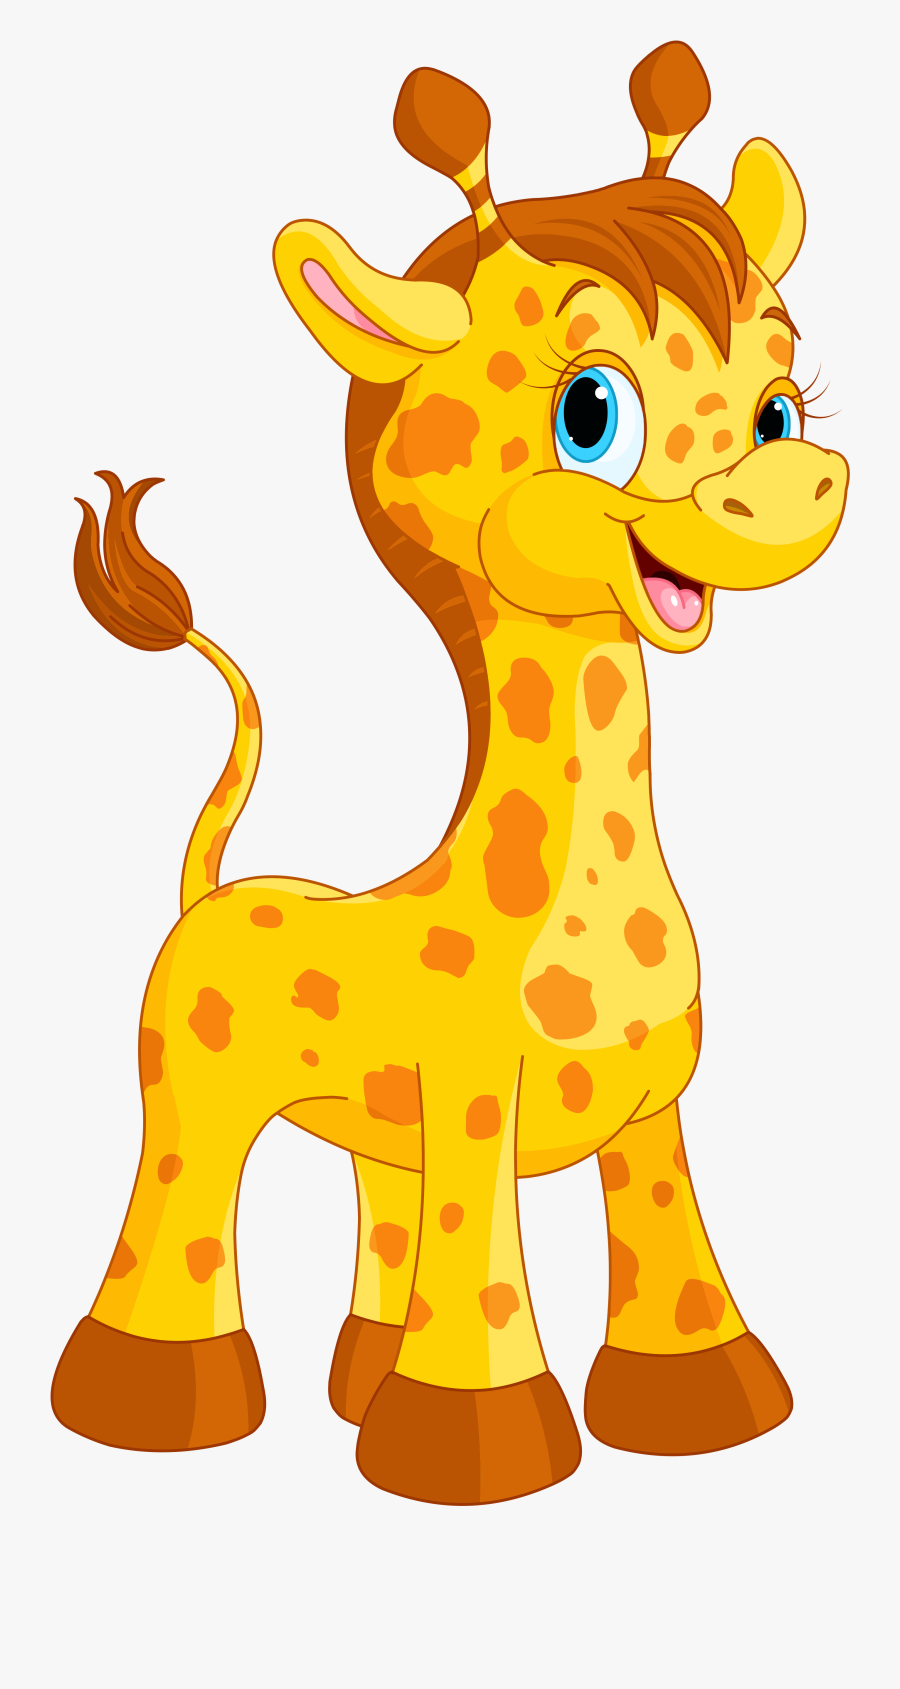 Cute Giraffe Cartoon Png Clipart Image - Giraffe Cartoon, Transparent Clipart